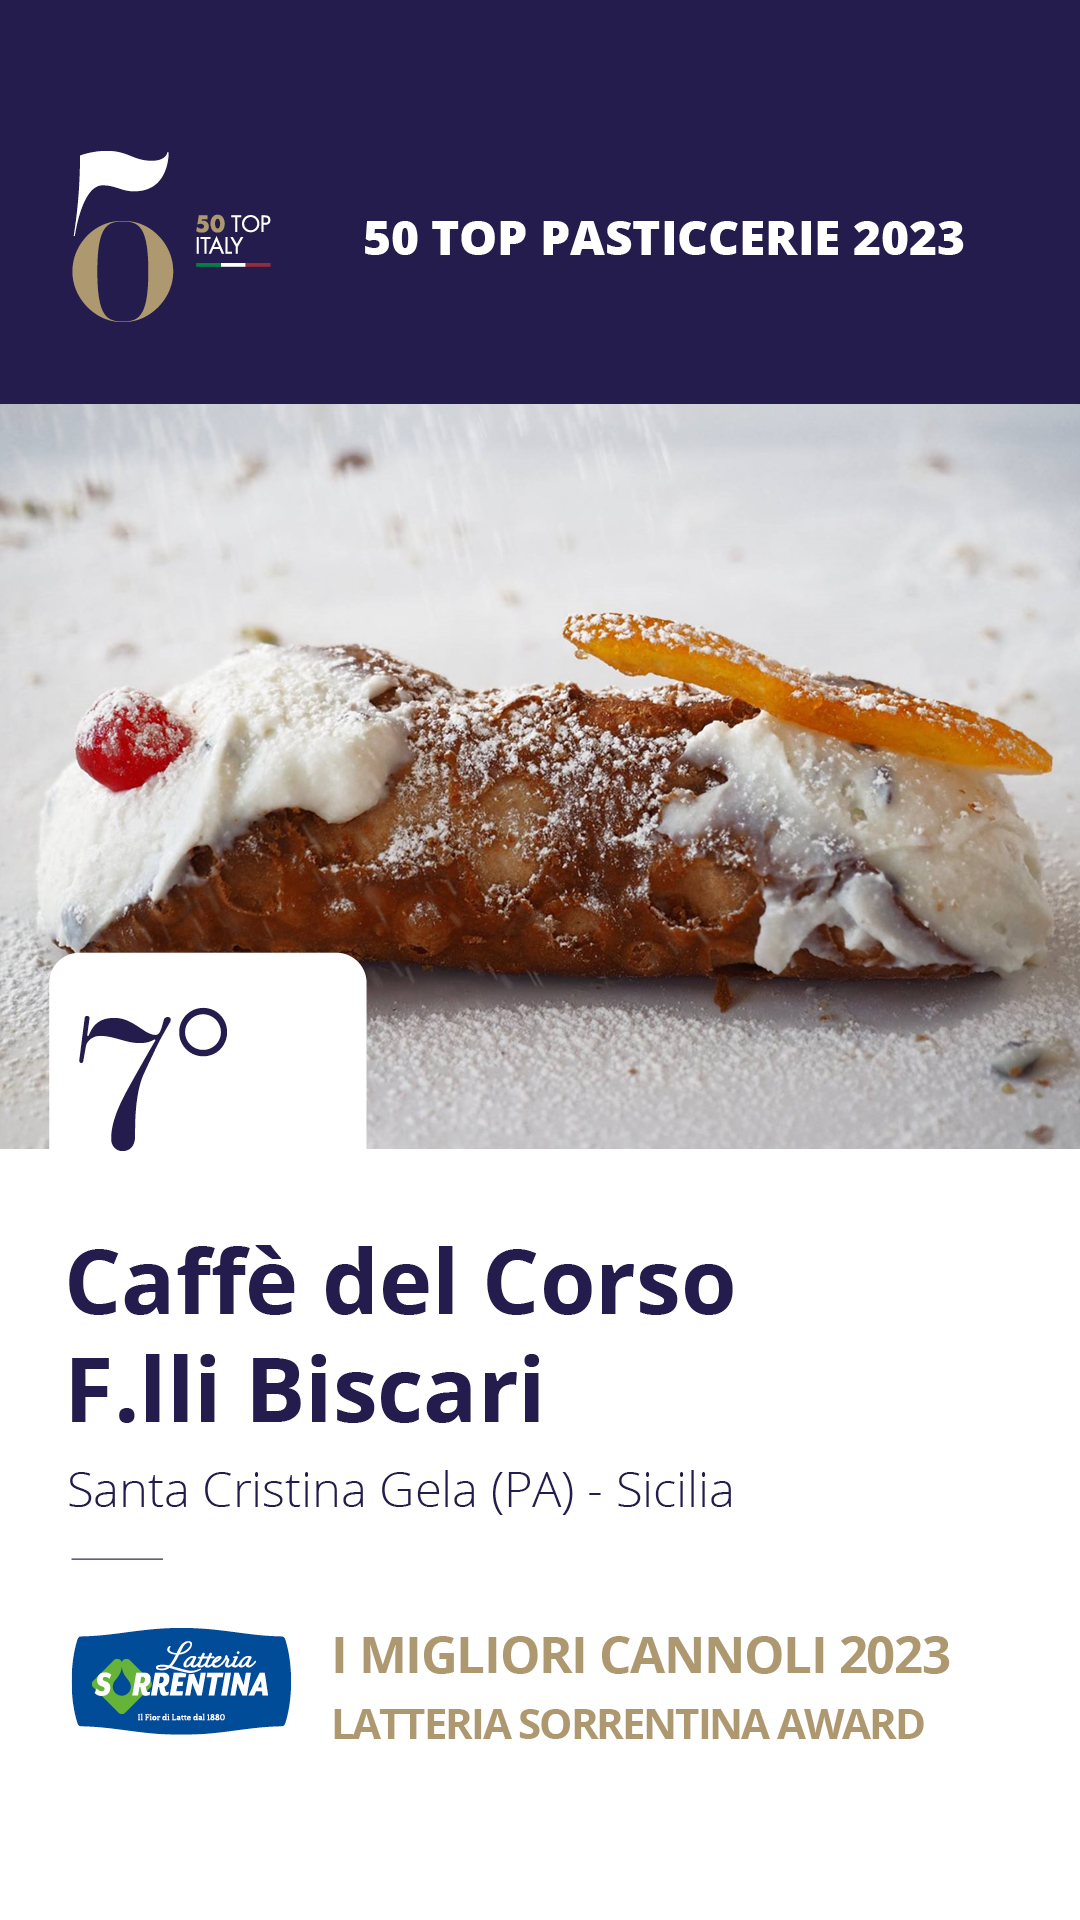 7 - Caffè del Corso F.lli Biscari - Santa Cristina Gela (PA), Sicilia